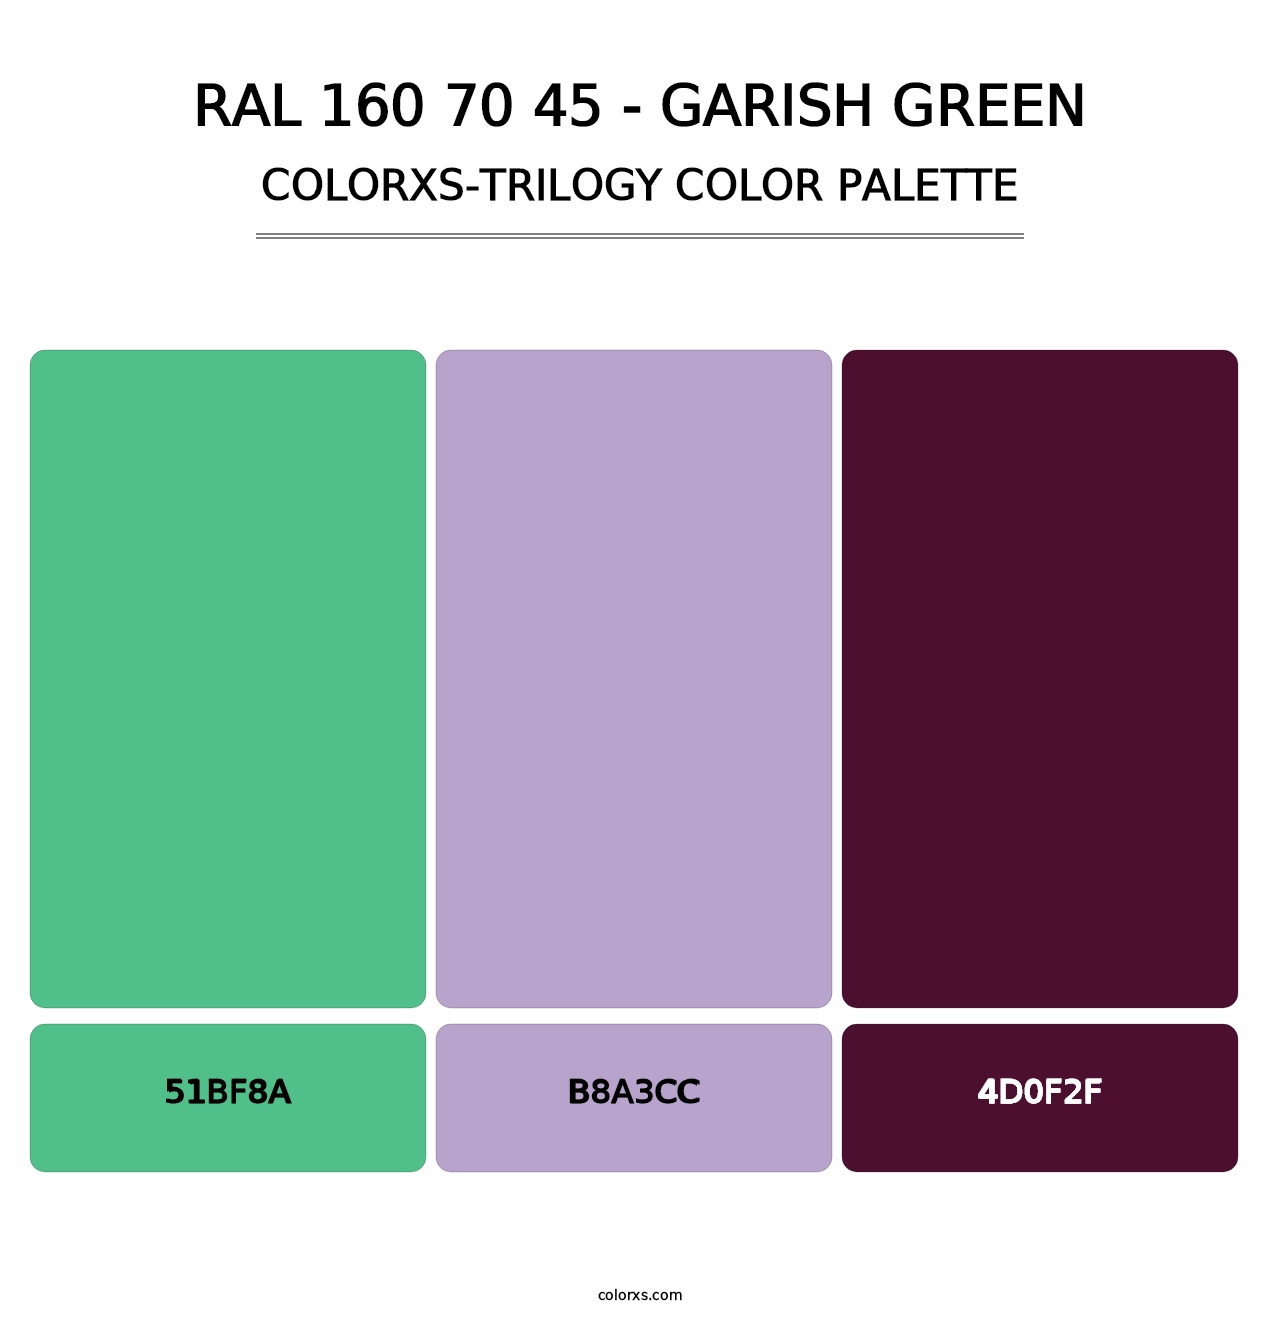 RAL 160 70 45 - Garish Green - Colorxs Trilogy Palette